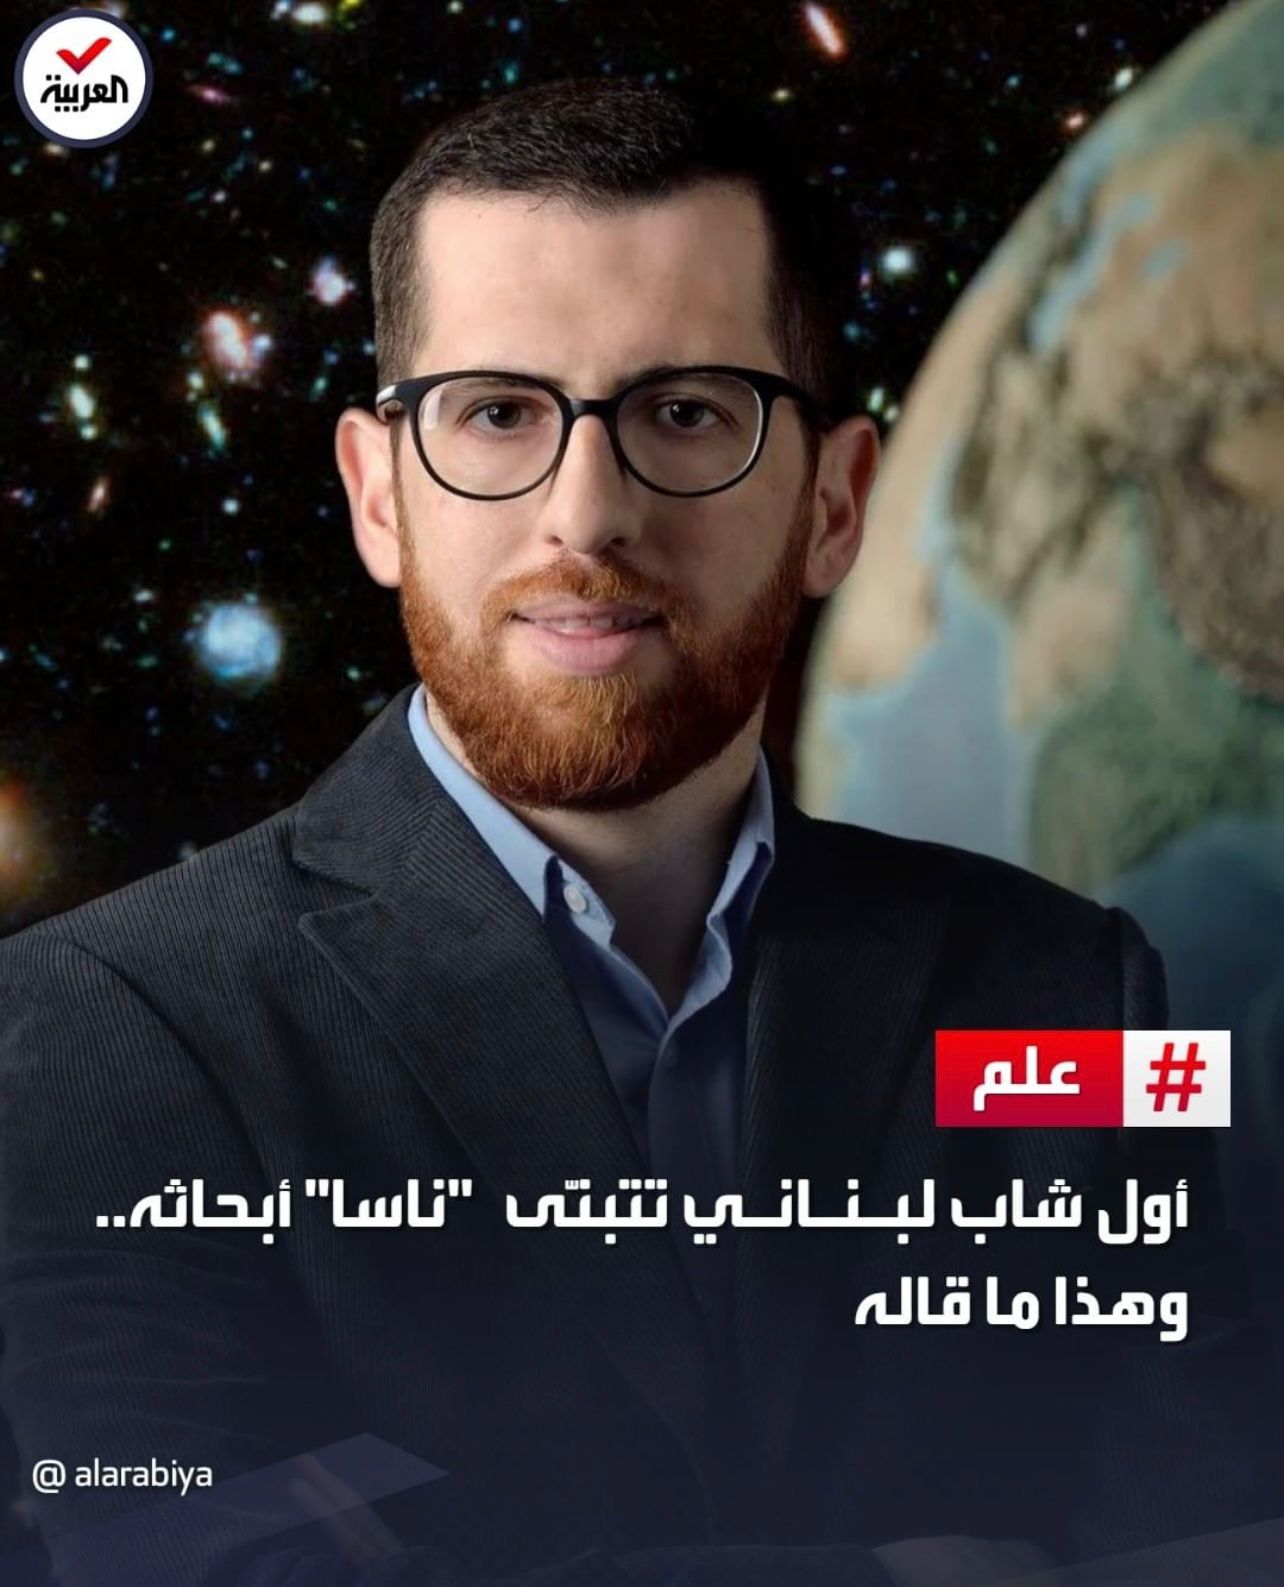 Il a étudié la physique à l'Université libanaise et a obtenu son diplôme en 2011 (Photo, Al Arabiya).